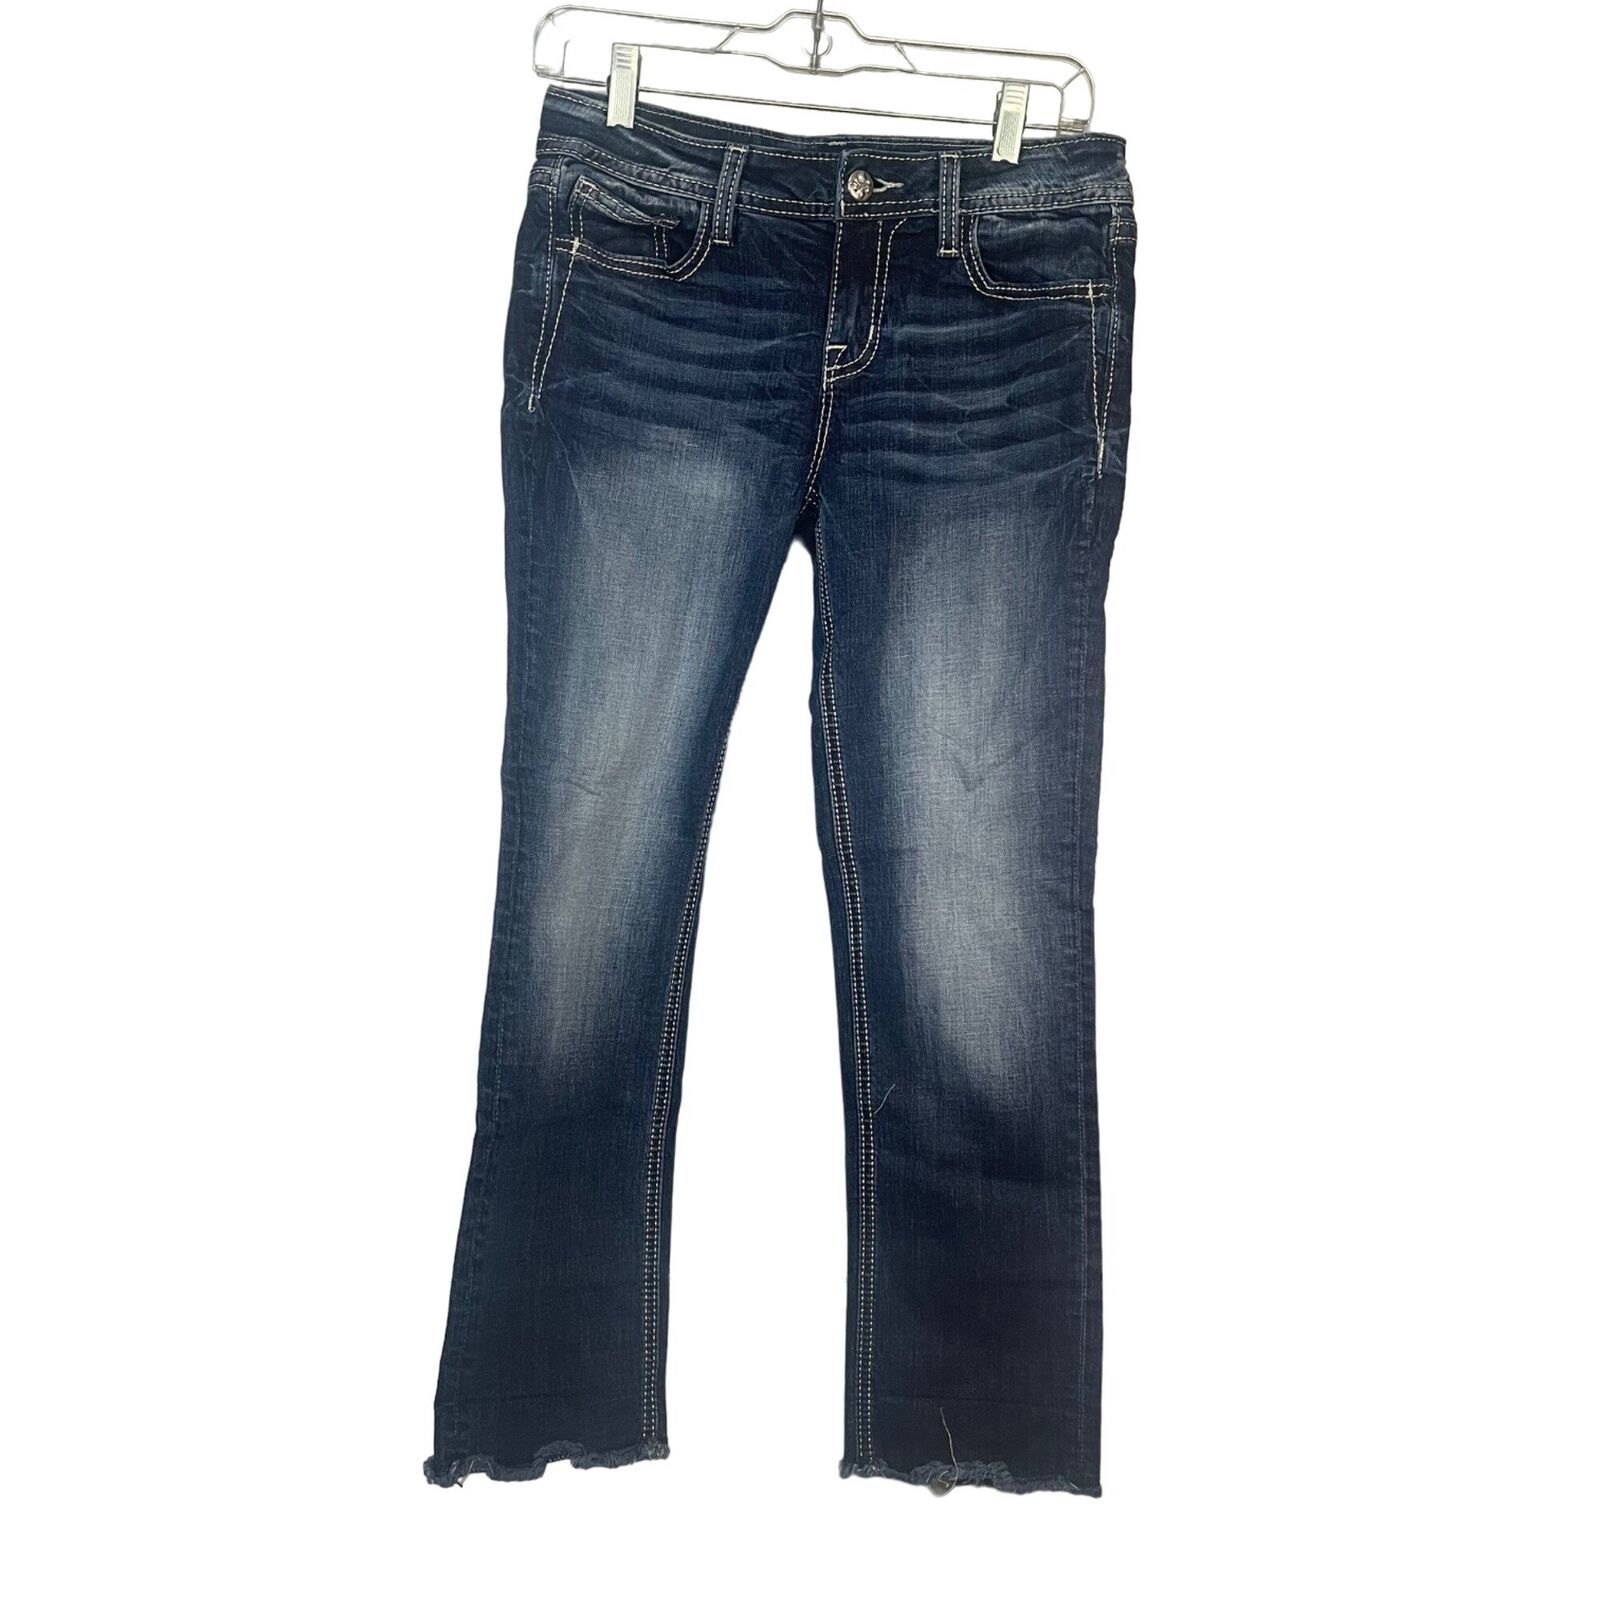 Primary image for Miss Me Size 27 Embellished Pocket Capri Jeans Raw Hem